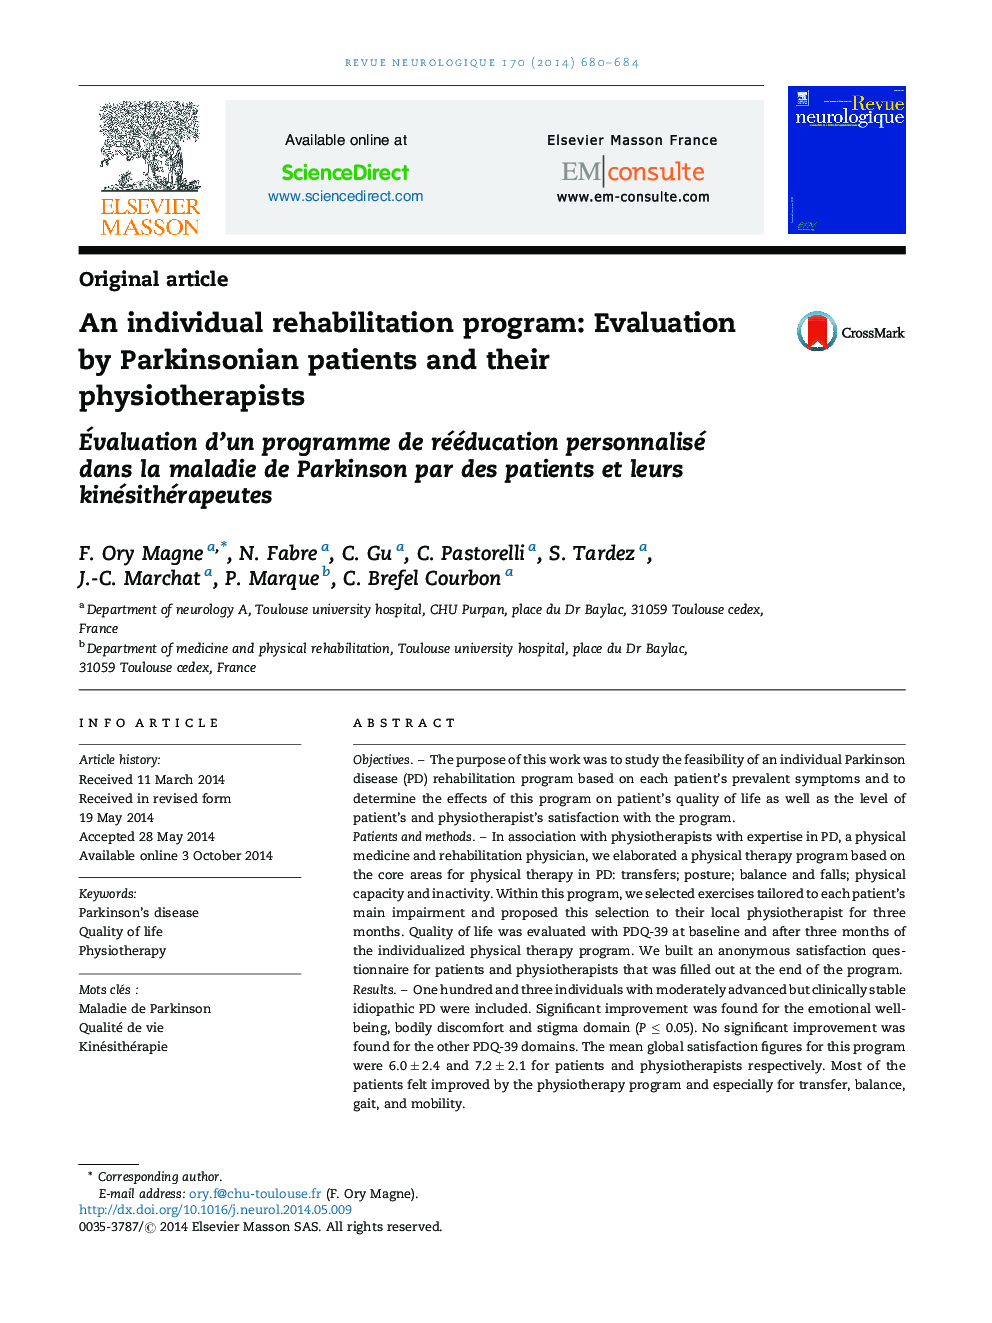 یک برنامه توانبخشی فردی: ارزیابی توسط بیماران پارکینسونی و فیزیوتراپیستهای آنها 